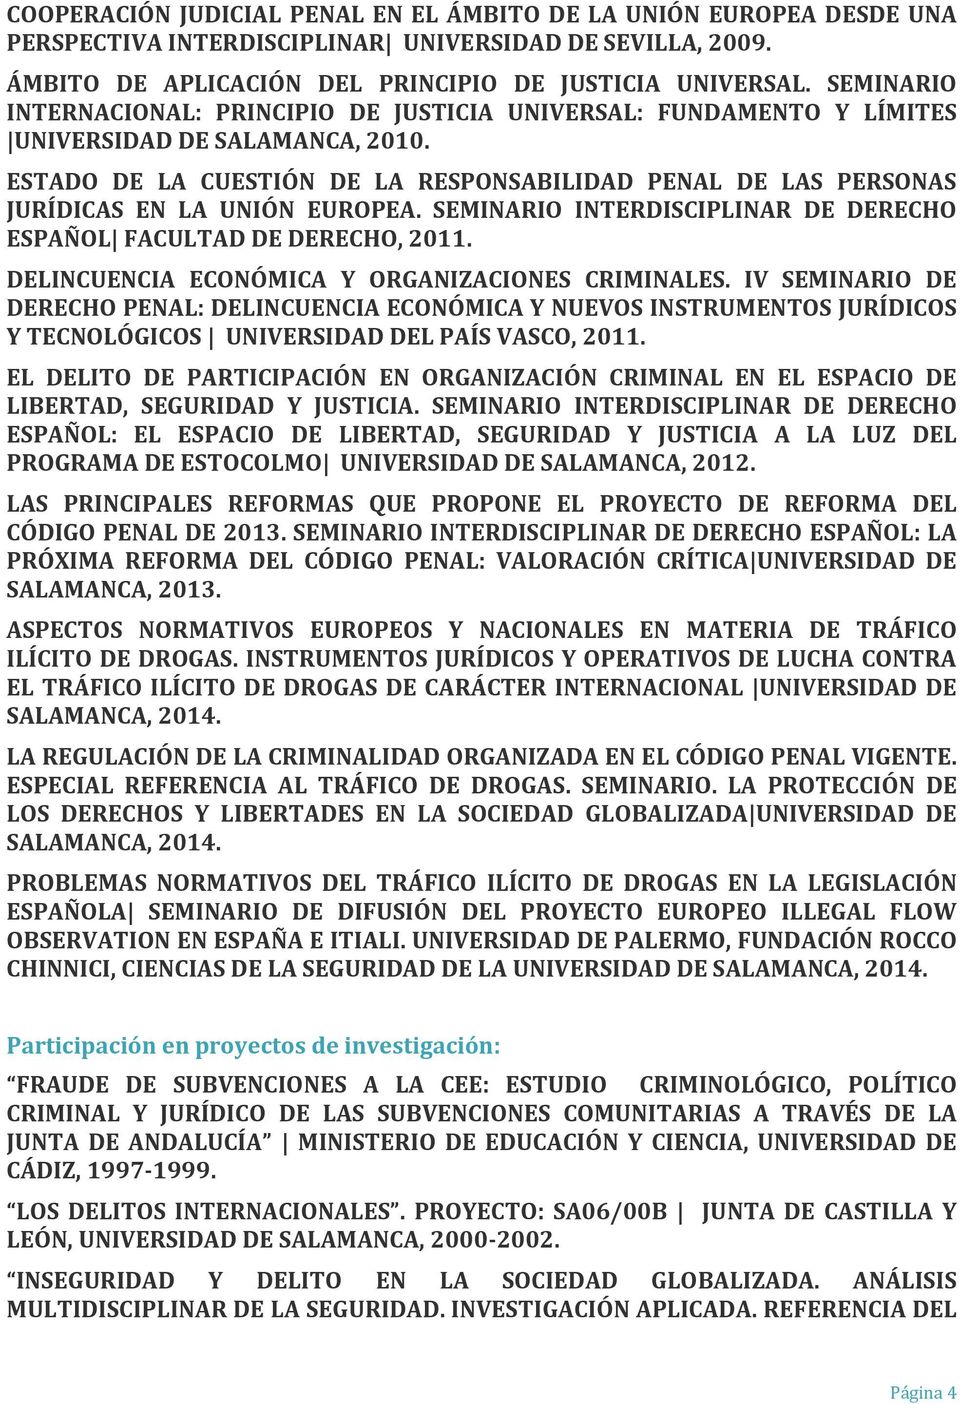 ESTADO DE LA CUESTIÓN DE LA RESPONSABILIDAD PENAL DE LAS PERSONAS JURÍDICAS EN LA UNIÓN EUROPEA. SEMINARIO INTERDISCIPLINAR DE DERECHO ESPAÑOL FACULTAD DE DERECHO, 2011.